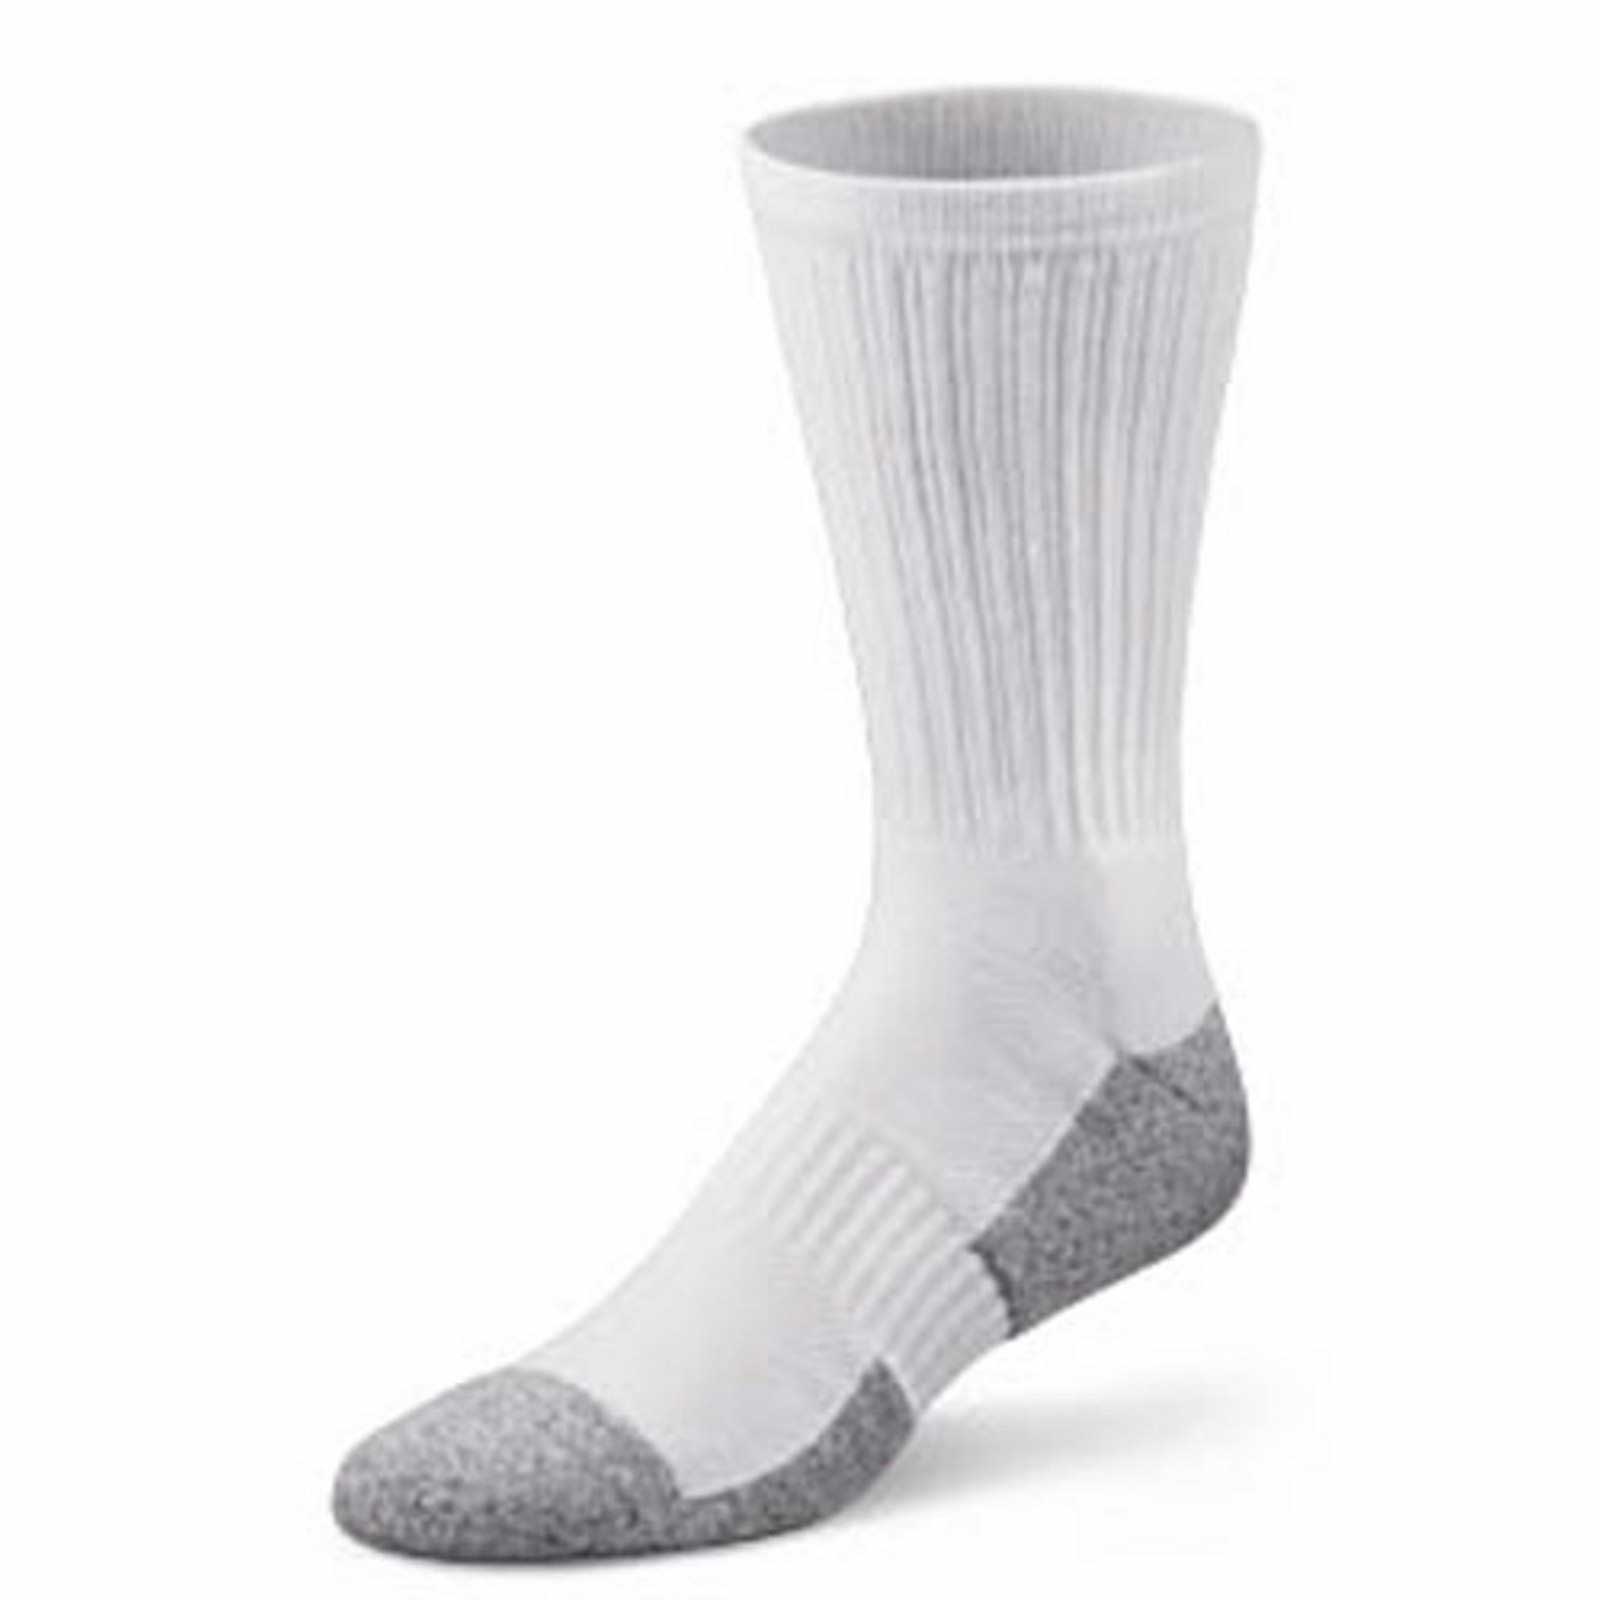 Dr. Comfort Crew Socks (1 Pair) - Women's Therapeutic Diabetic Socks - Athletic, Casual, Dress